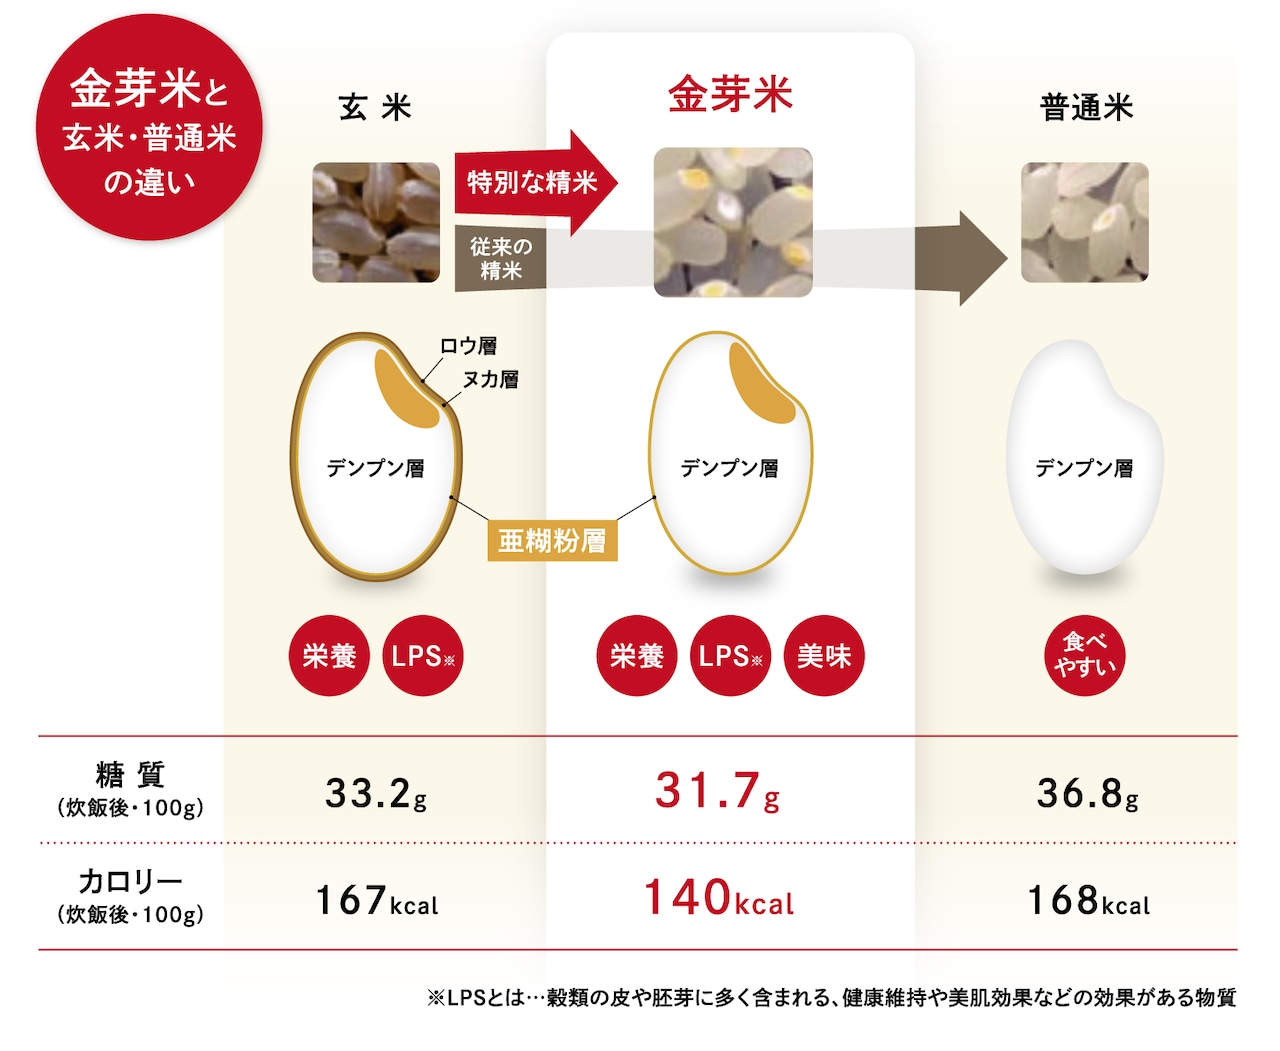 島根県産金芽米きぬむすめ 5キロ 送料込み